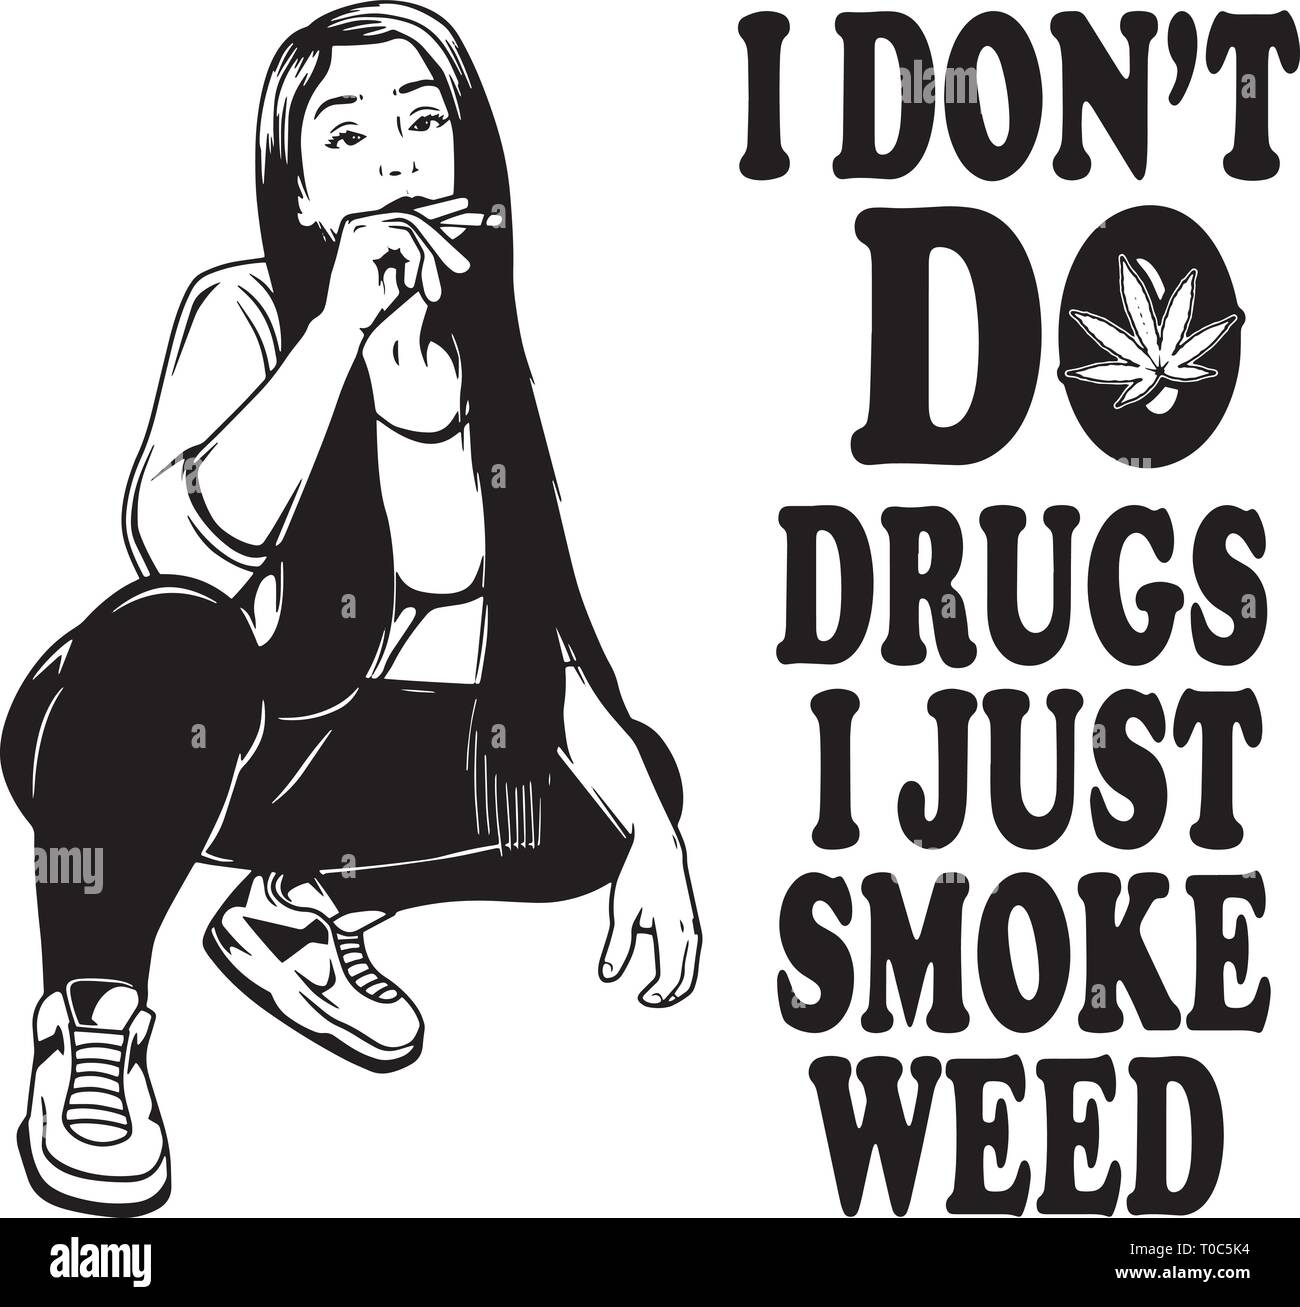 Stumpfe Weed Cannabis marihuana Topf Stein hohe Leben Raucher Droge 420 Mary Jane Stock Vektor